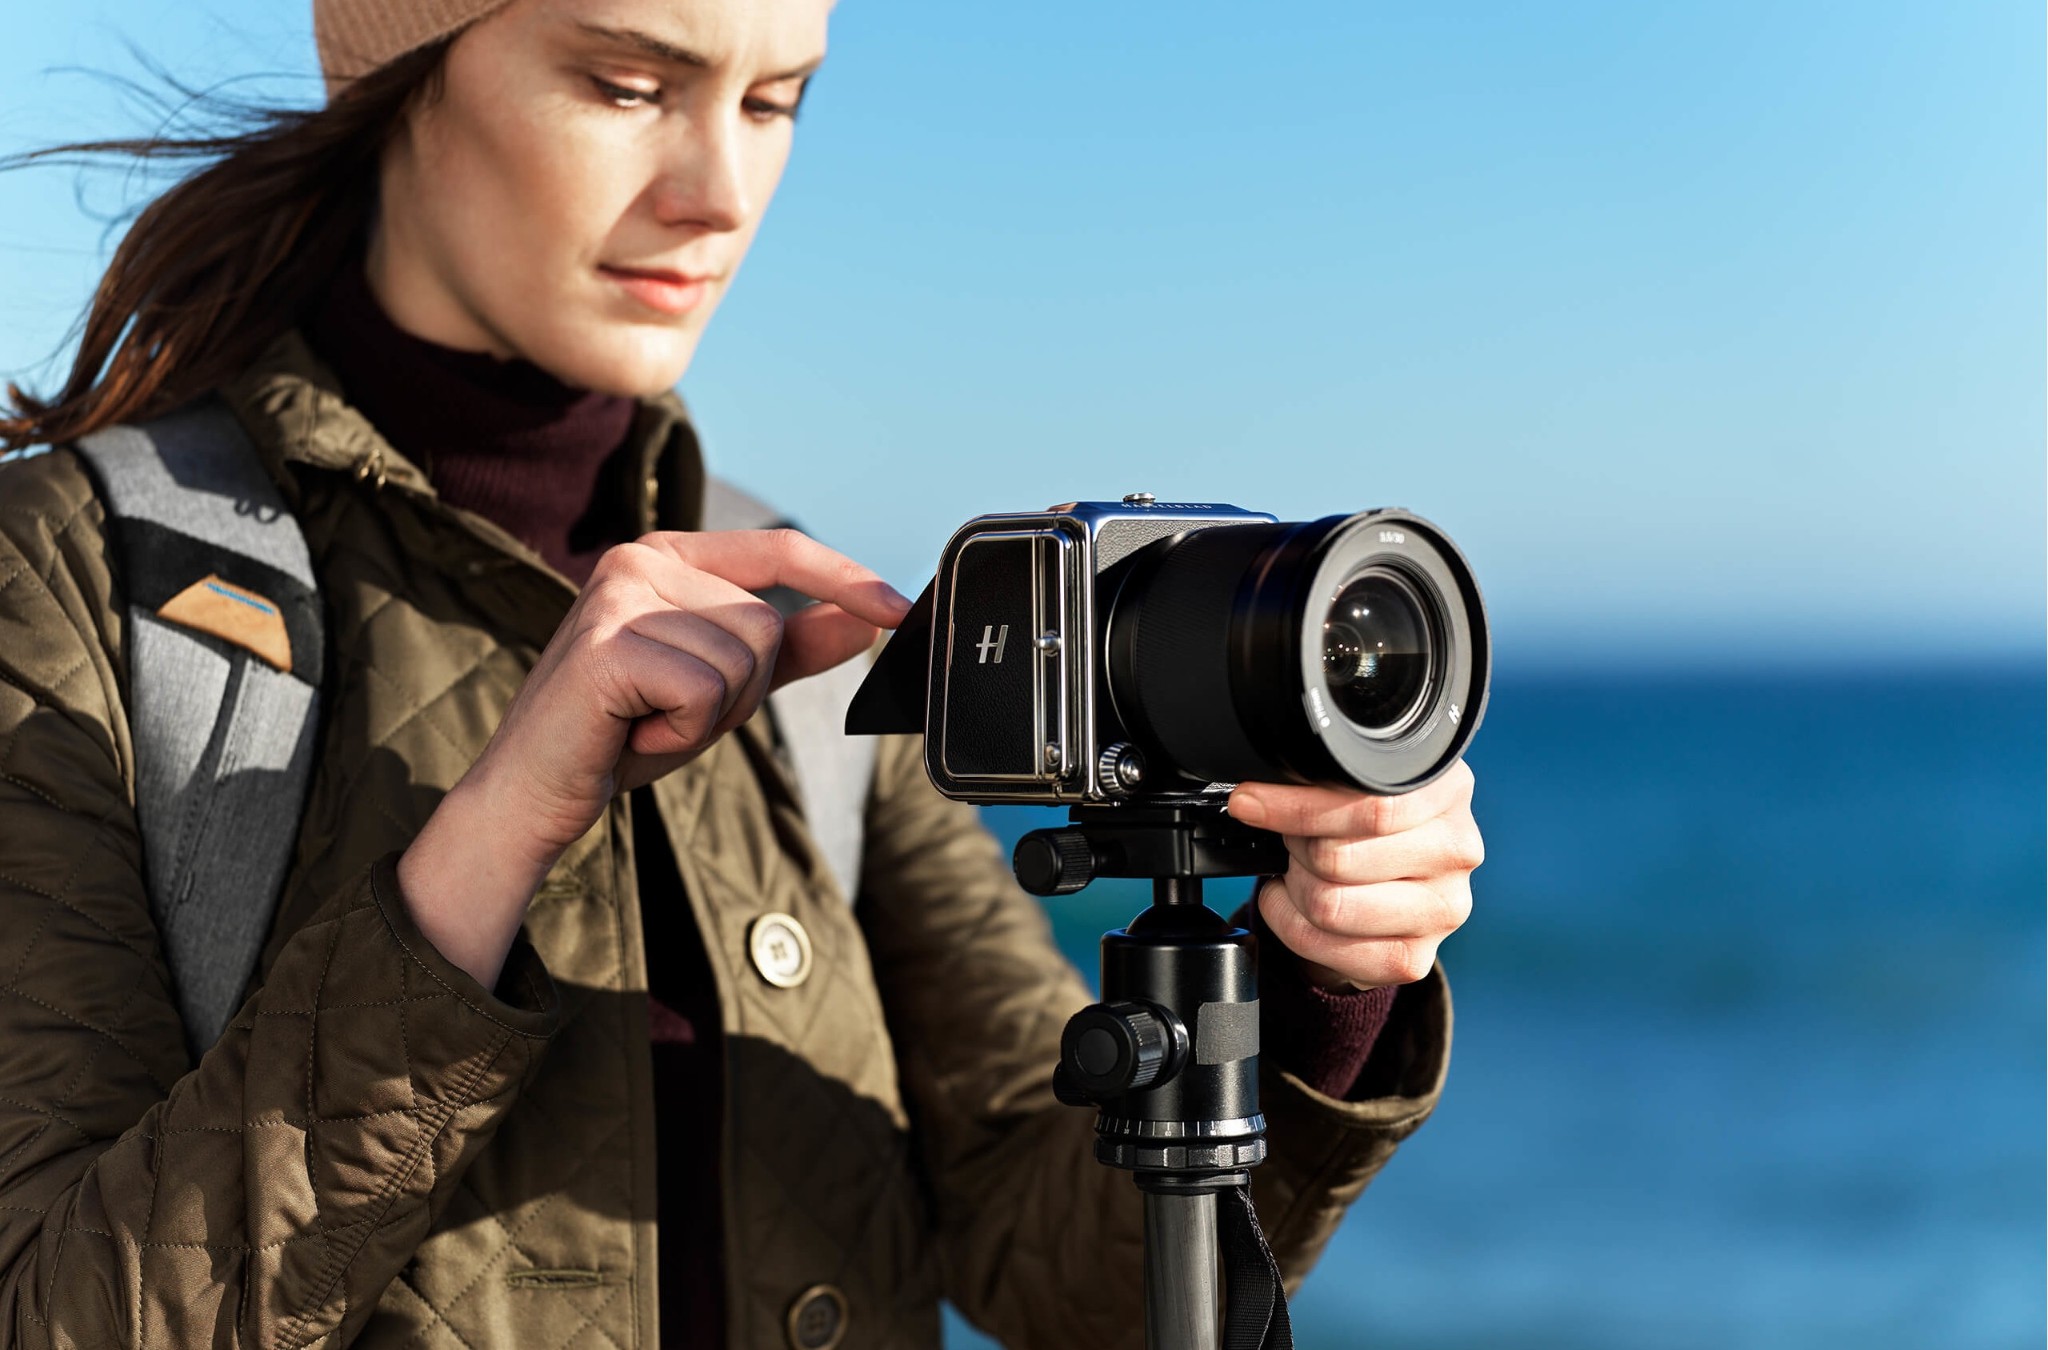 Máy ảnh module Hasselblad 907X 50C sắp được bán ra, medium format nhỏ gọn nhất, giá từ 6400 USD